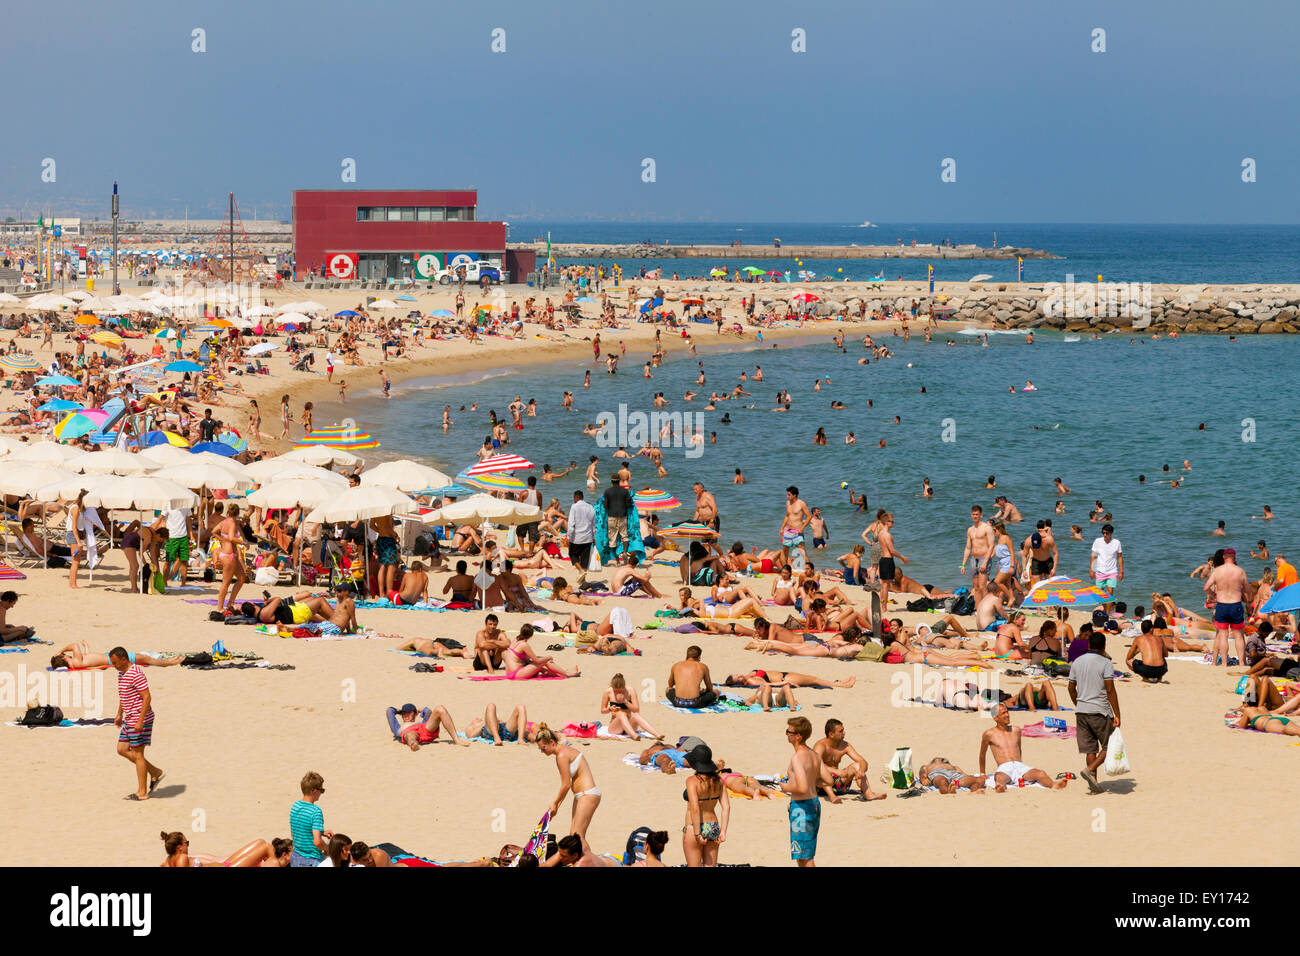 Les touristes de soleil sur Platja Nova Icaria plage Nova Icaria ( ), du Port Olympique, Barcelone Espagne Europe Banque D'Images